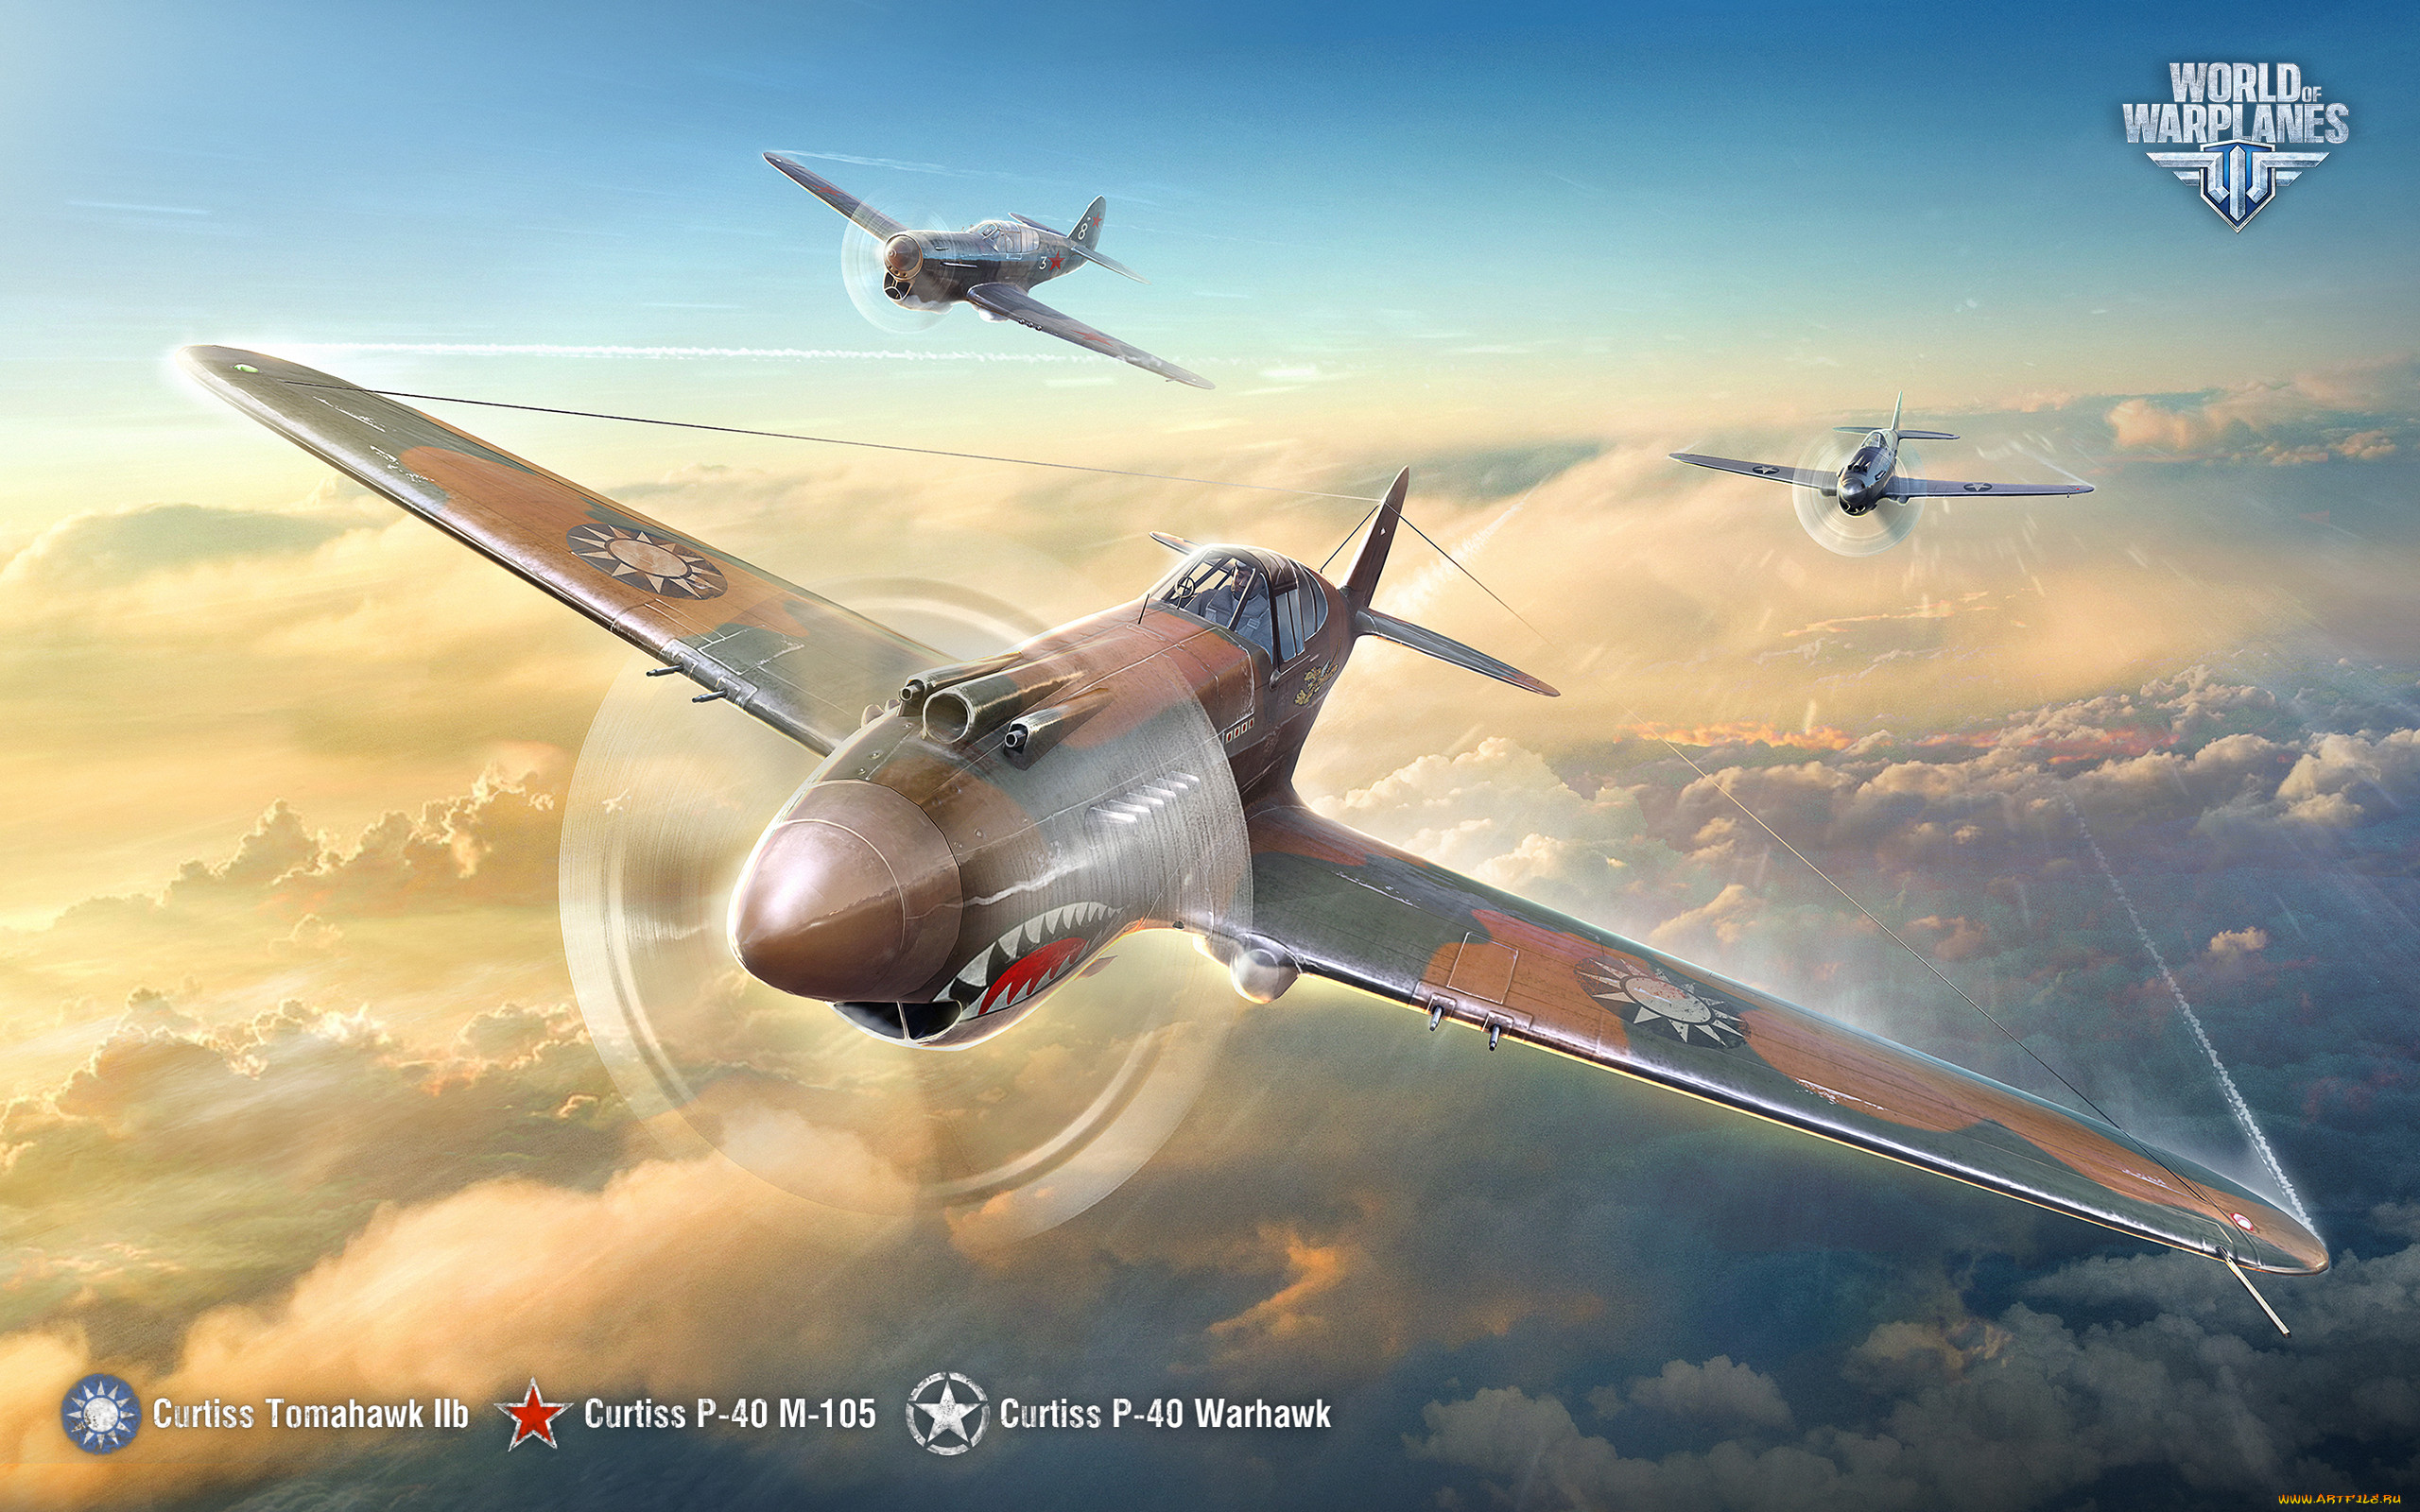 Скриншоты World Of Warplanes, изображения и другие фото к игре World Of Warplanes